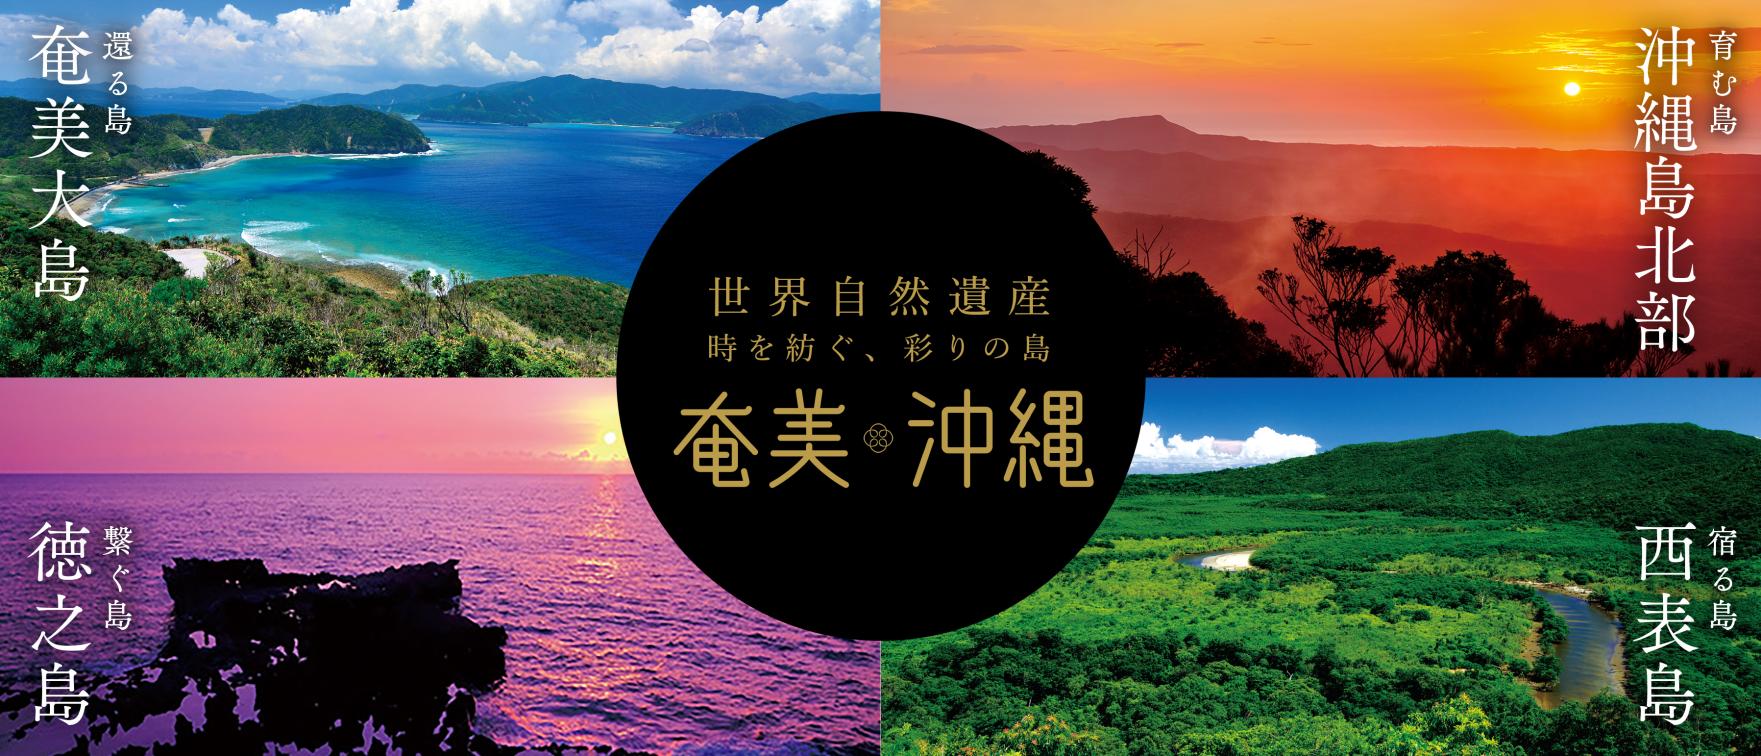 4つのエリアで魅力を発見!奄美・沖縄世界自然遺産を旅する-0